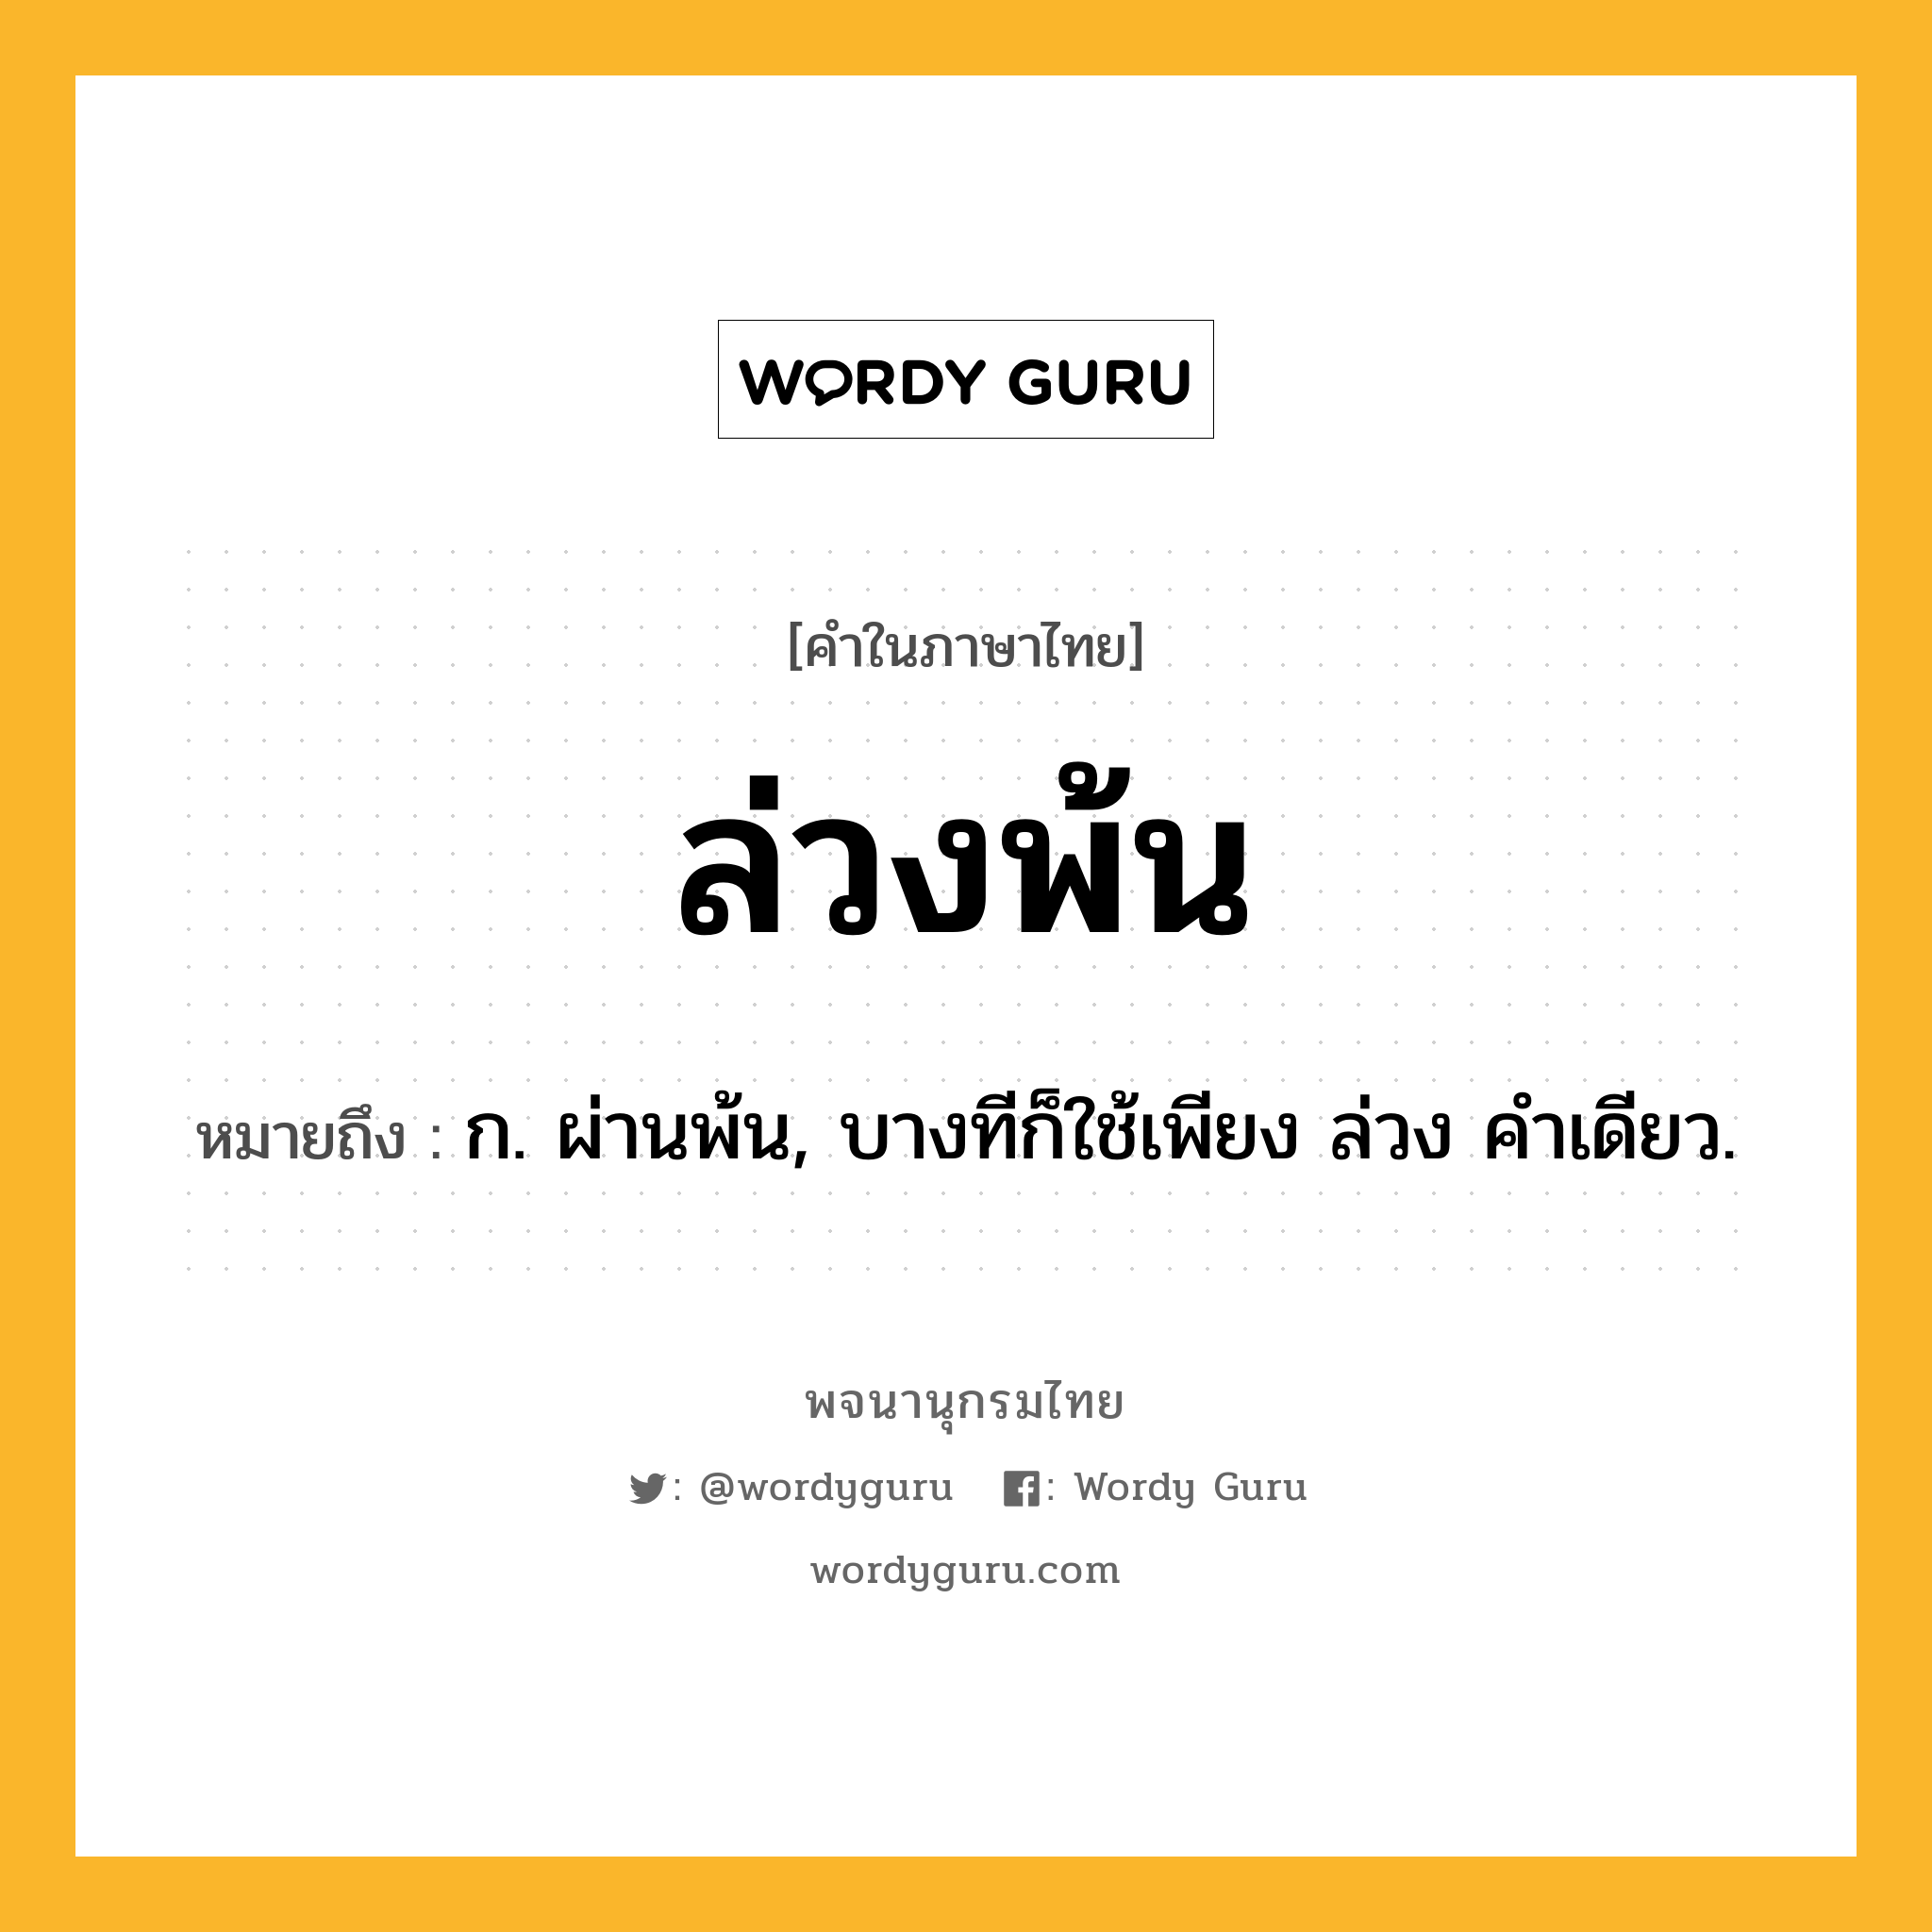 ล่วงพ้น หมายถึงอะไร?, คำในภาษาไทย ล่วงพ้น หมายถึง ก. ผ่านพ้น, บางทีก็ใช้เพียง ล่วง คําเดียว.